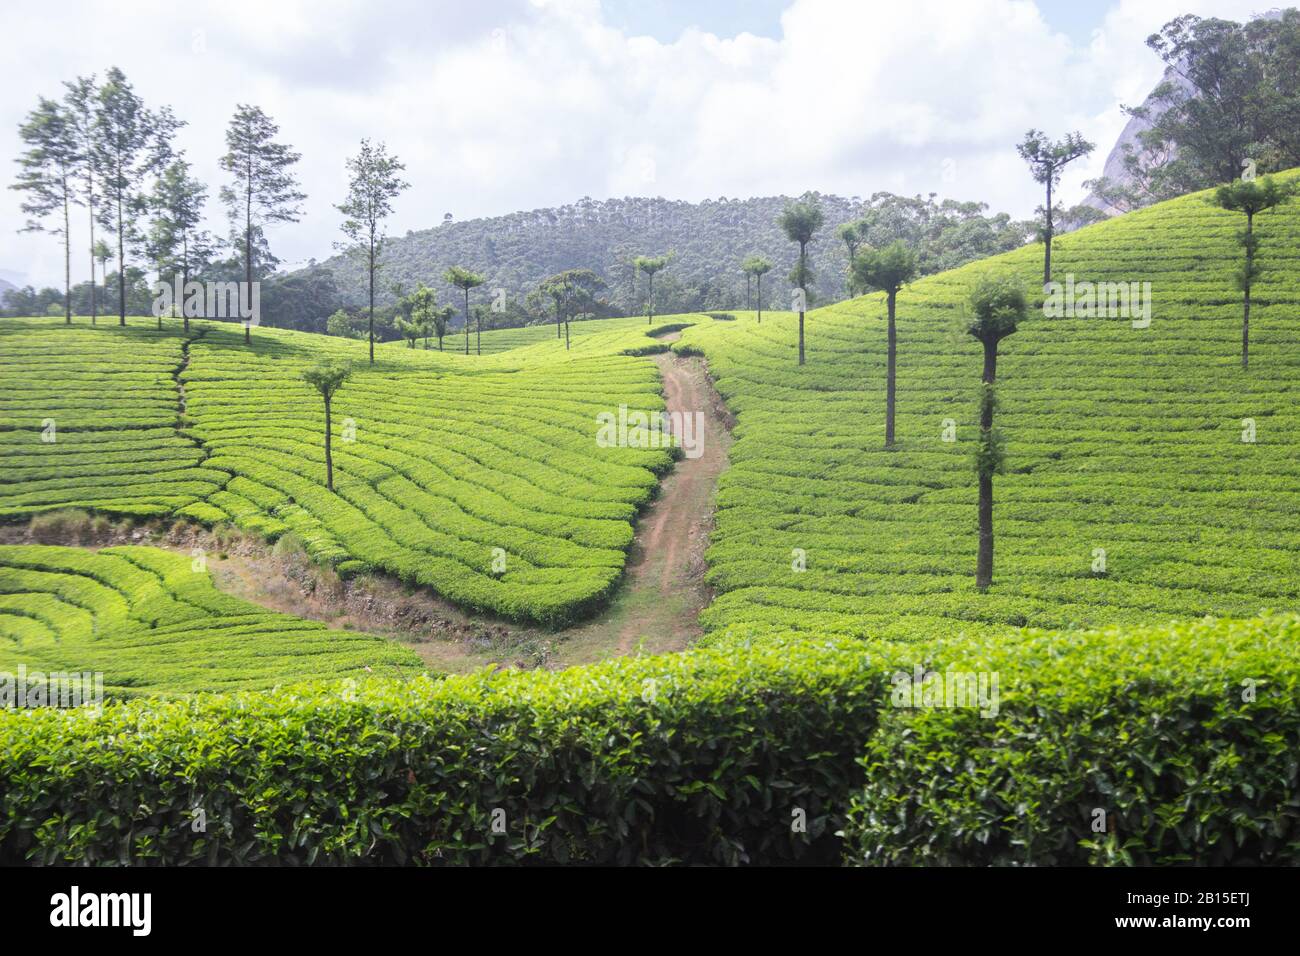 The tea gardens of Munnar Stock Photo